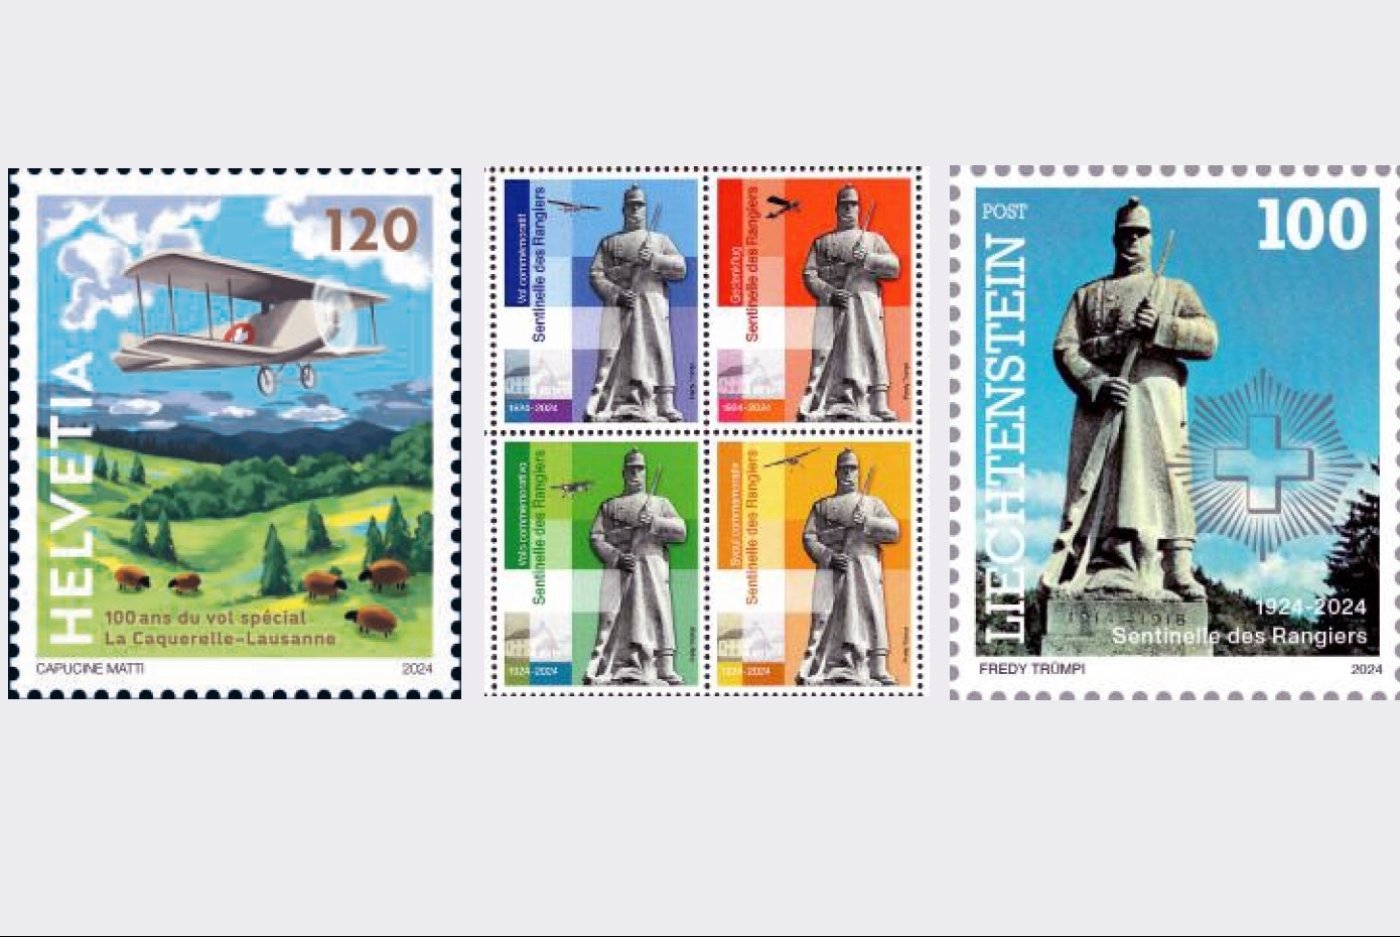 Le timbre sorti hier (à gauche) pour marquer les 100 ans du vol postal La Caquerelle-Lausanne, un bloc de quatre vignettes édité par les organisateurs de l’événement du 31 août à La Caquerelle (au centre) et un des trois timbres consacrés à cette commémoration émis au Liechtenstein (à droite).